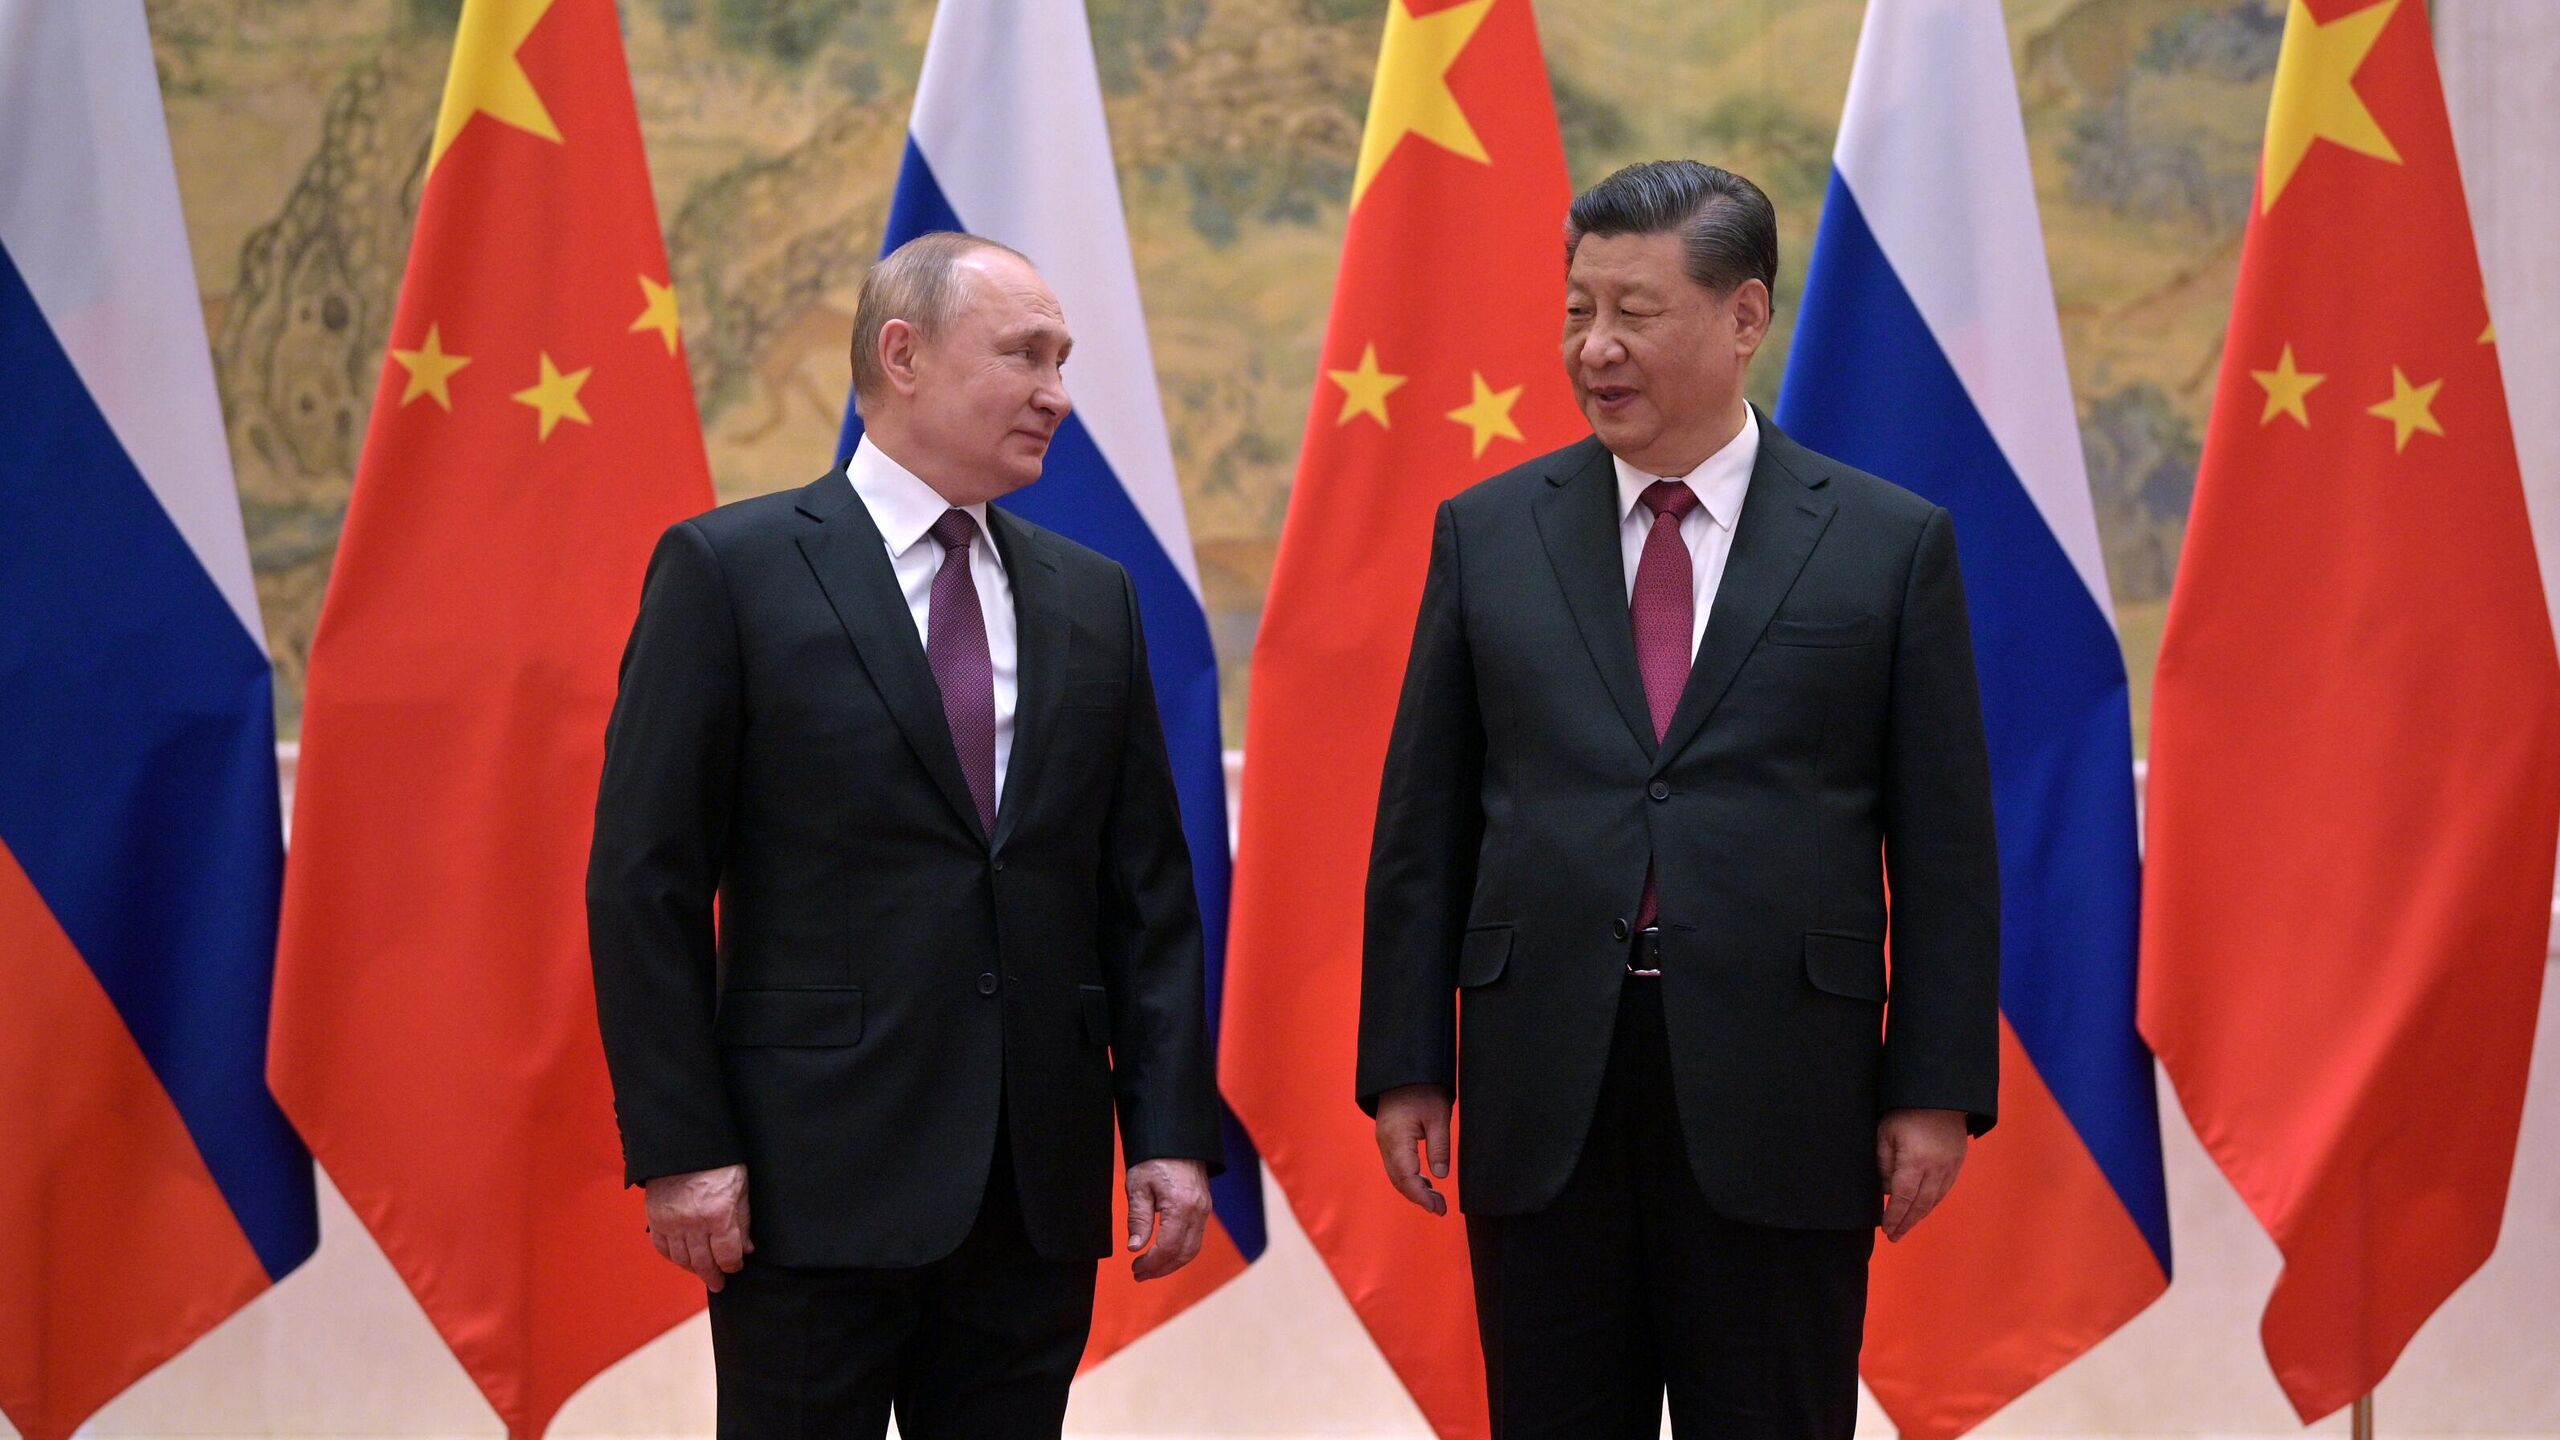 Putin dan Xi Jinping akan membahas konflik di Ukraina, kata Ushakov